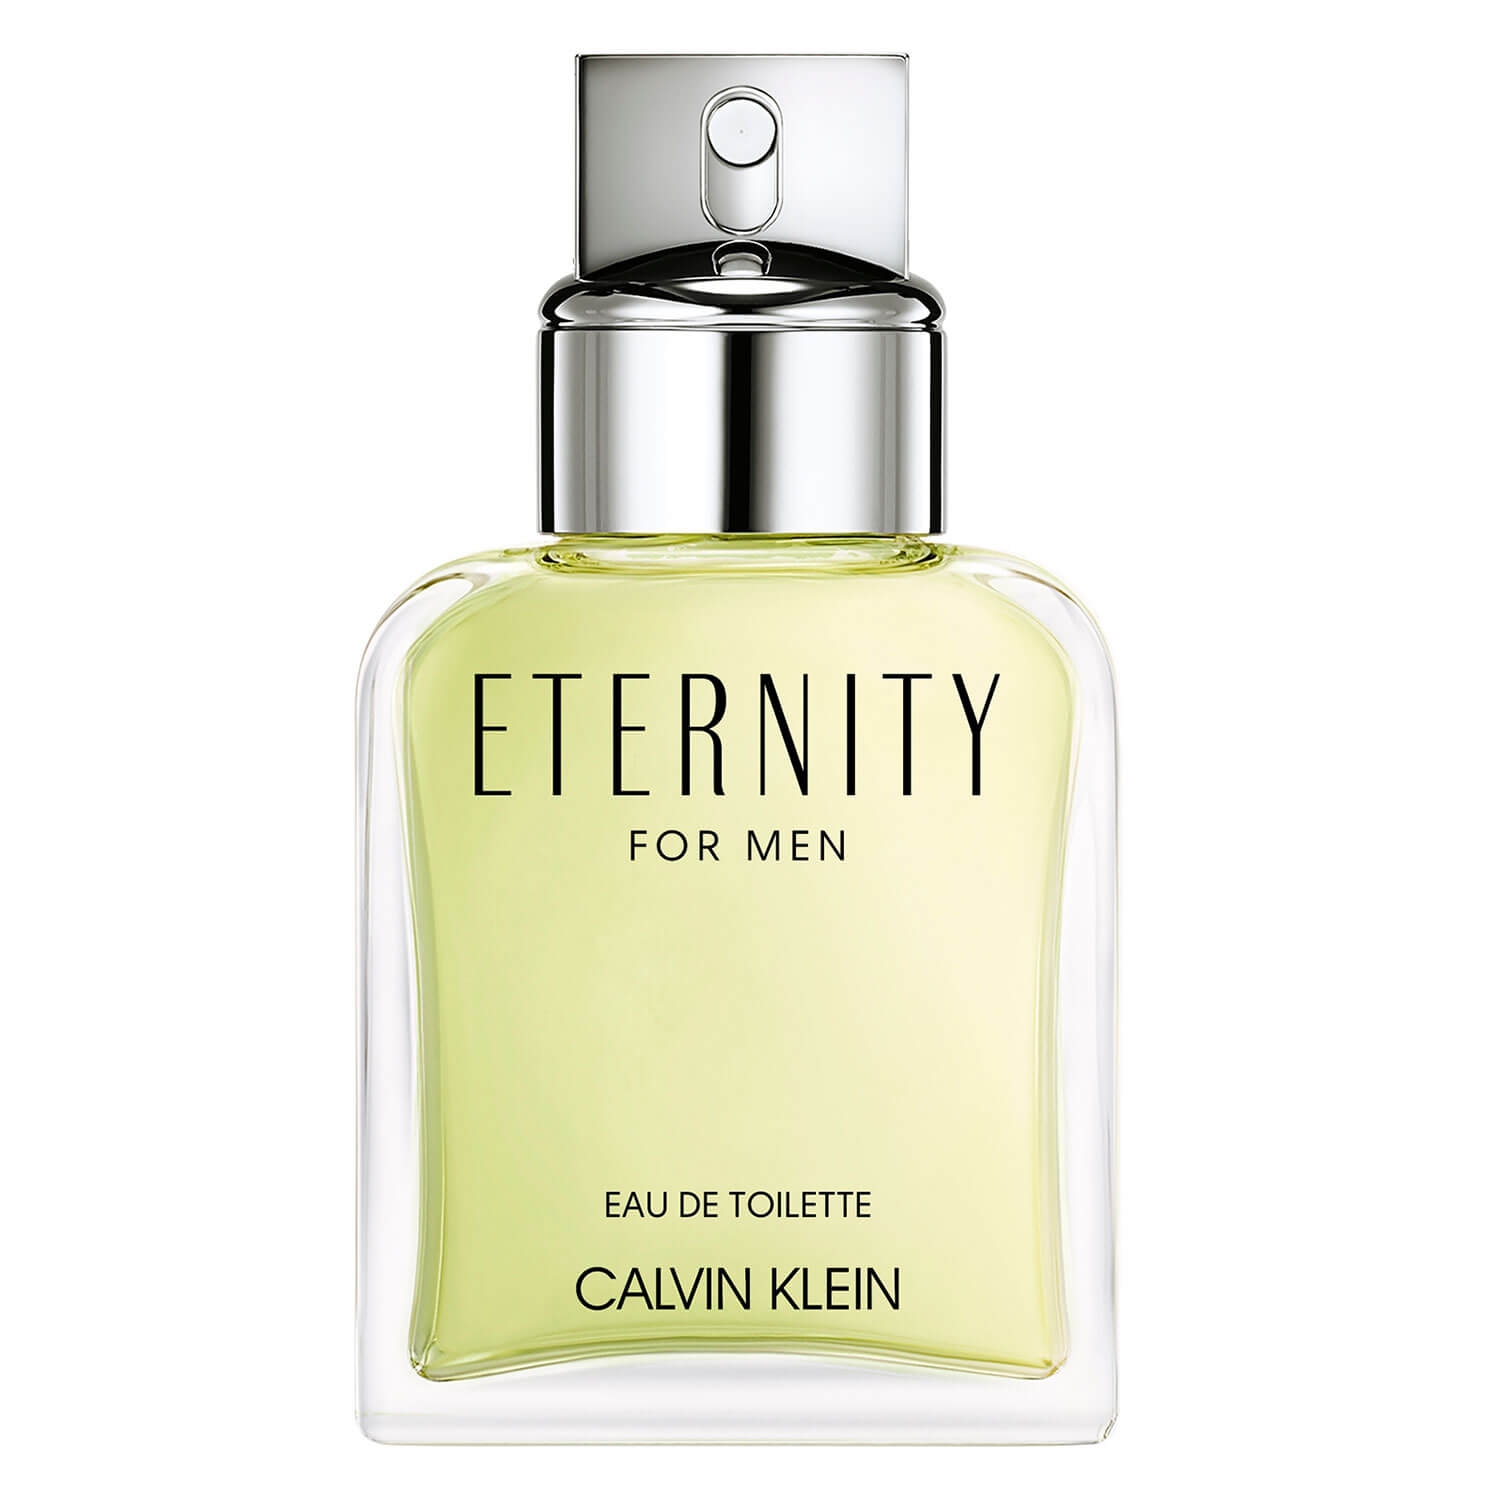 Product image from Eternity - For Men Eau de Toilette